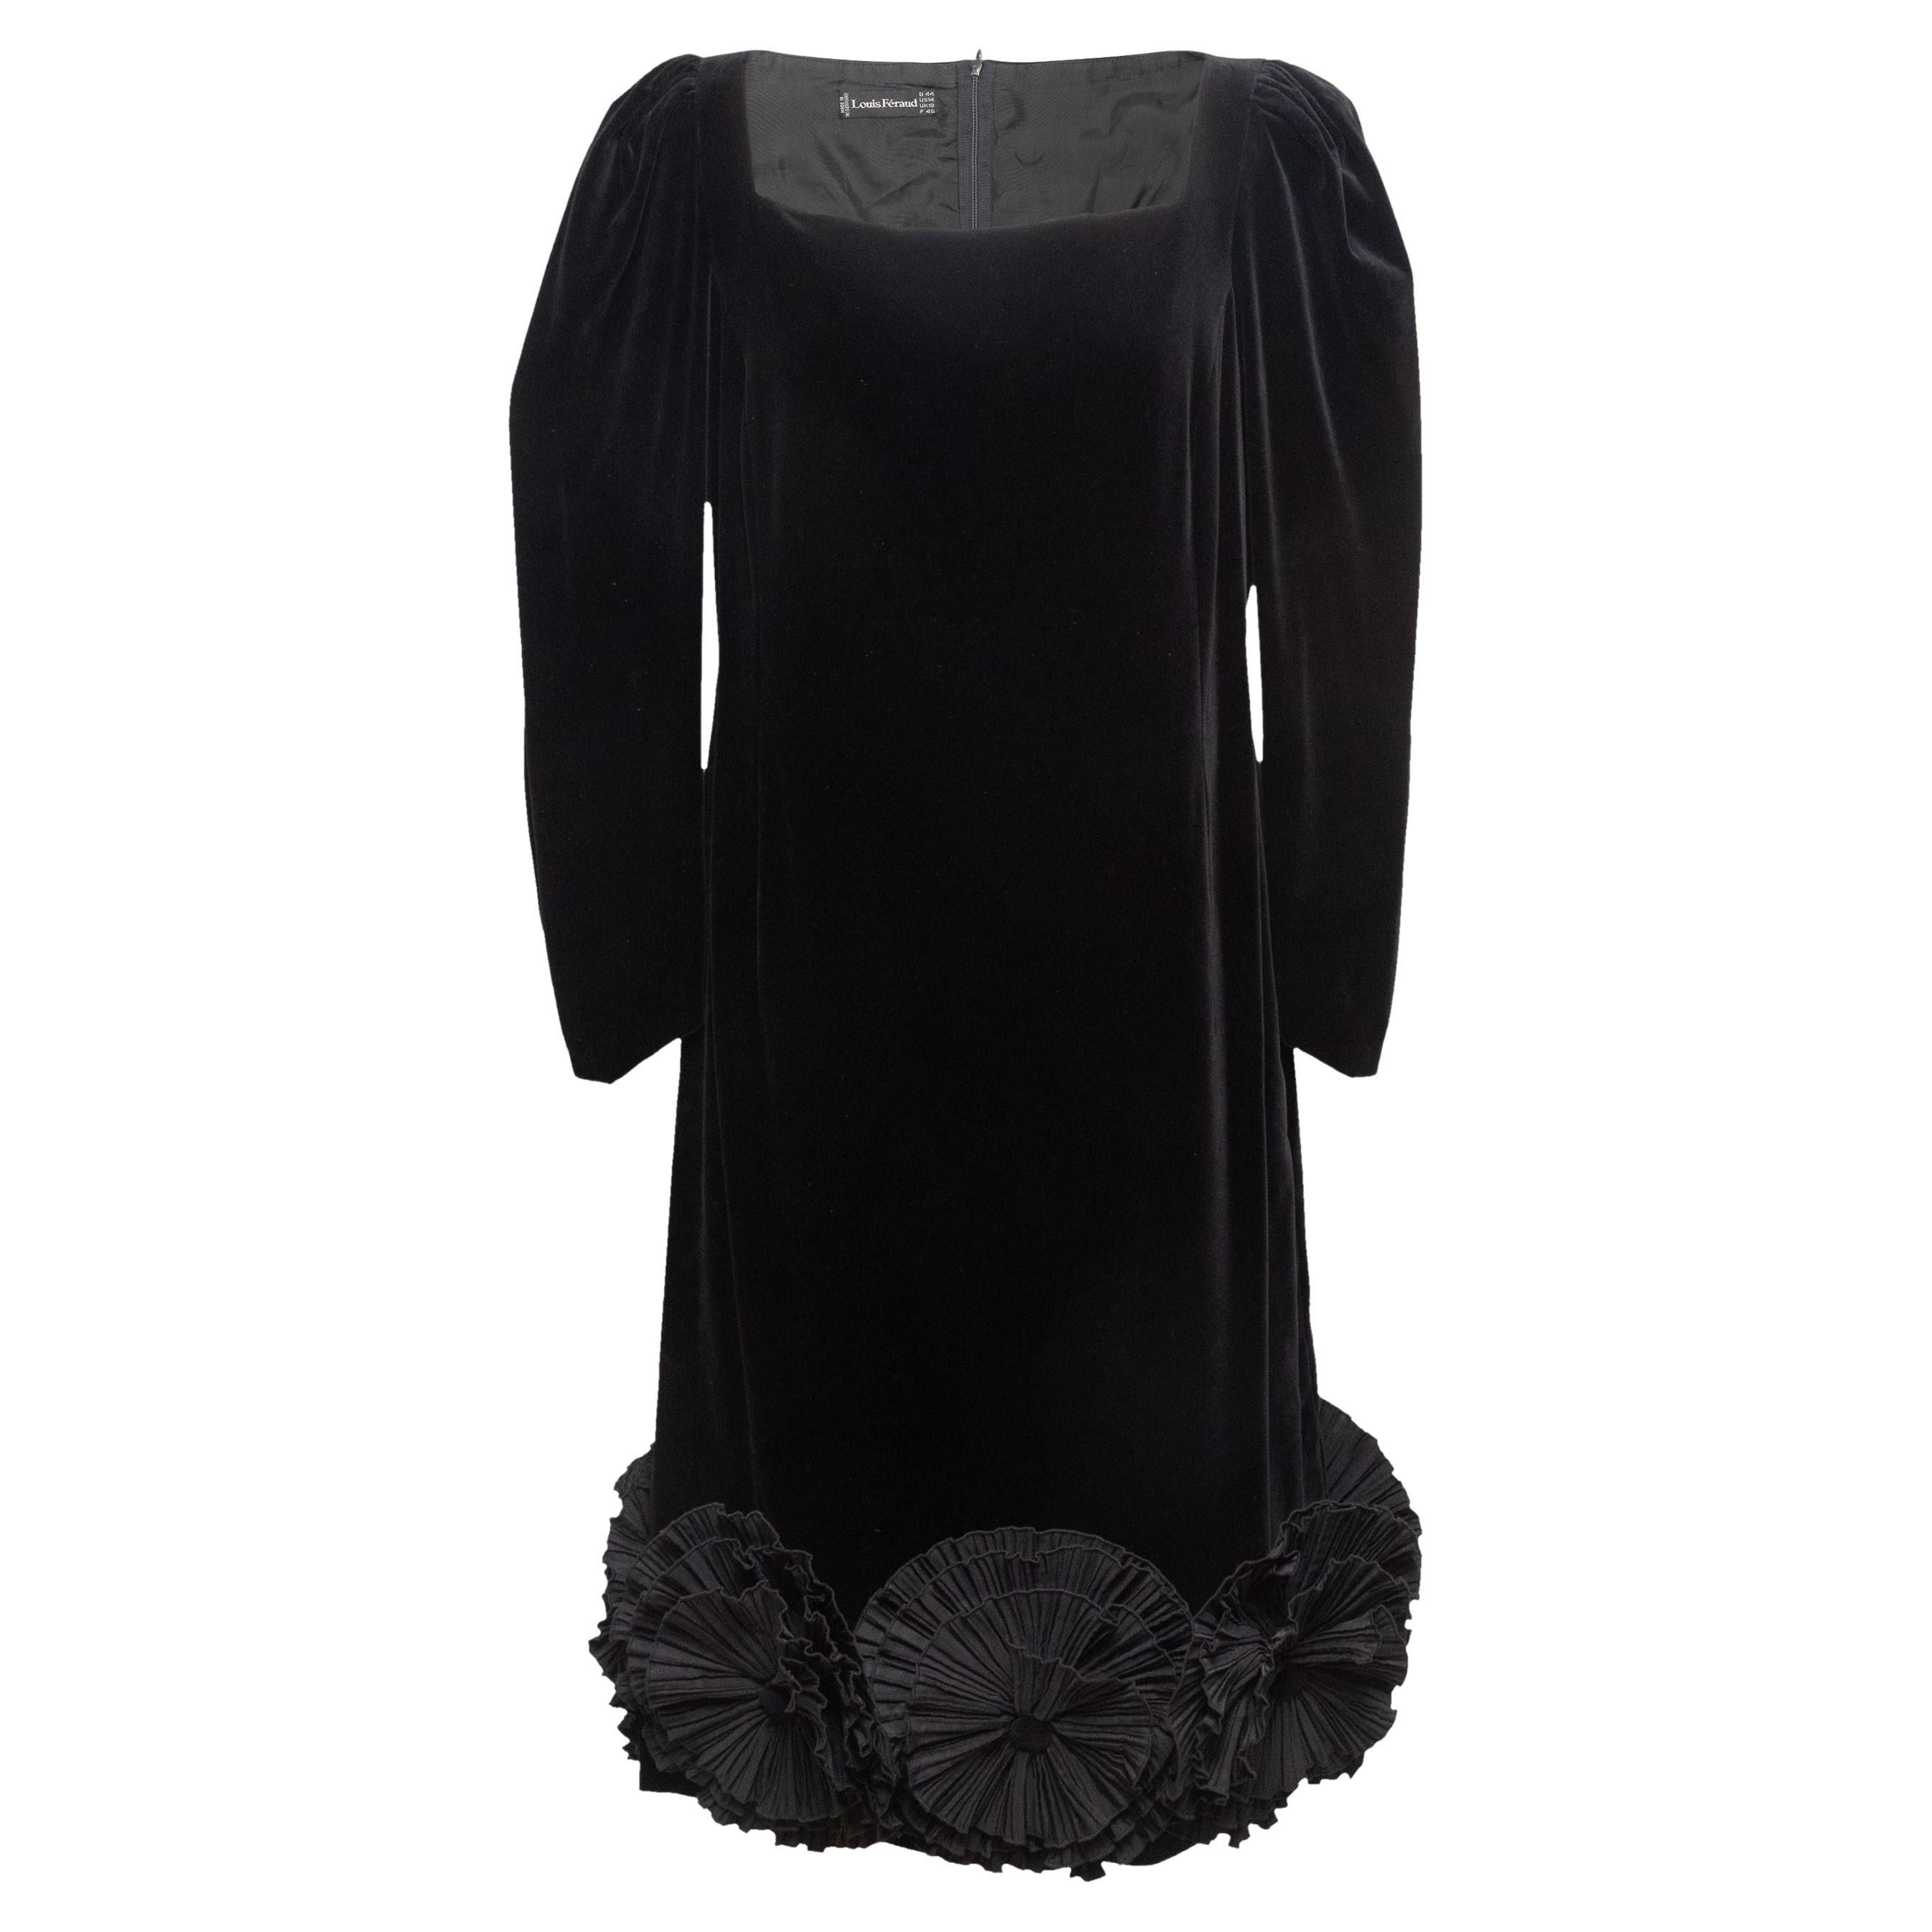 Louis Feraud Black Velvet Rosette-Accented Cocktail Dress